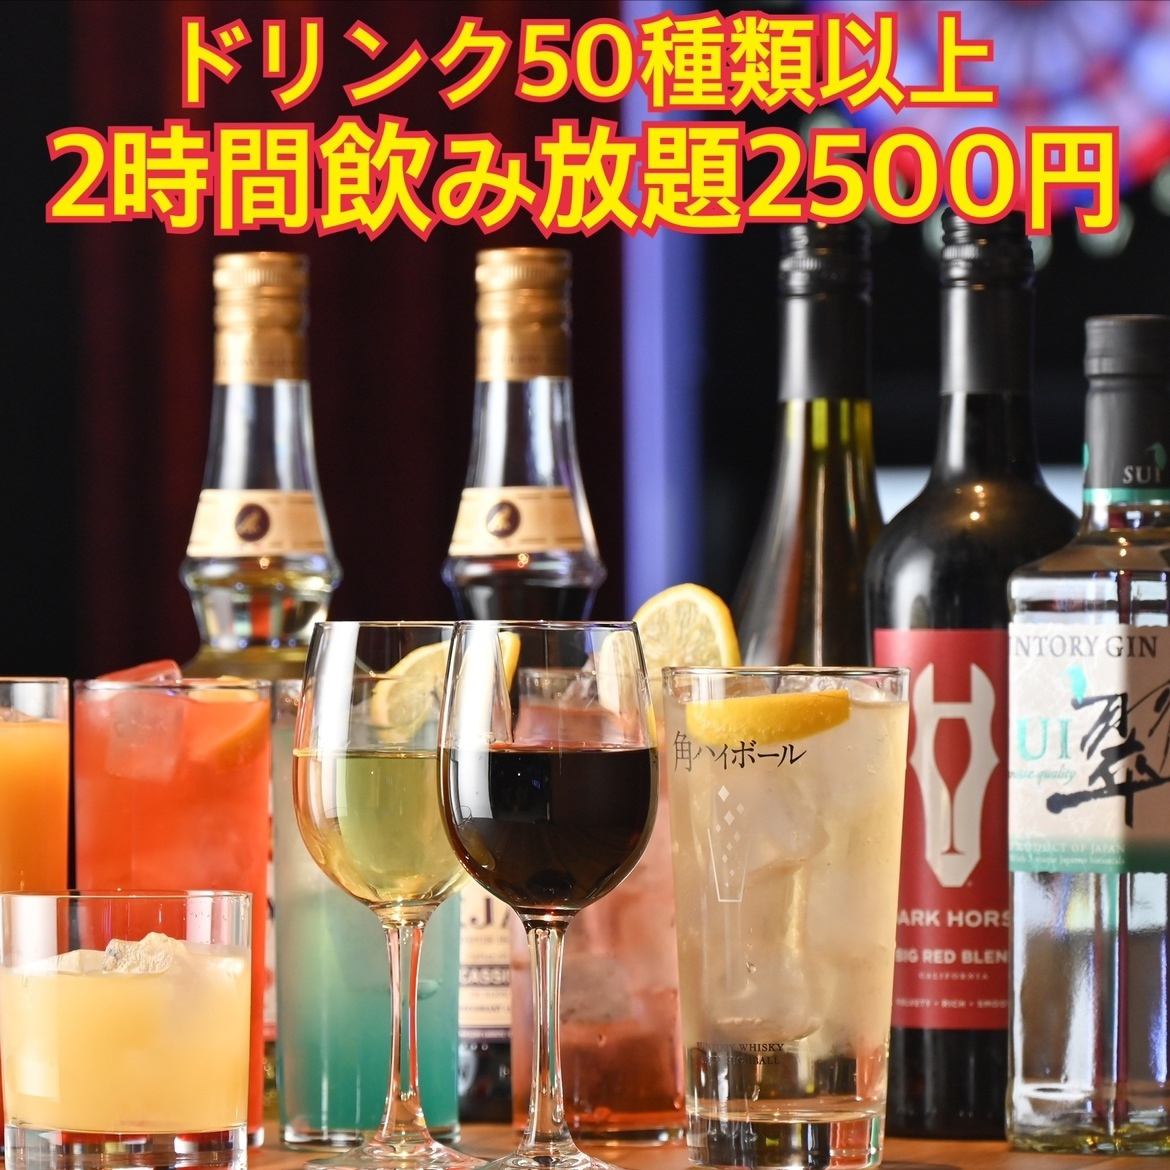 2小时无限畅饮2,500日元起★请与第二人或第三人一起使用！